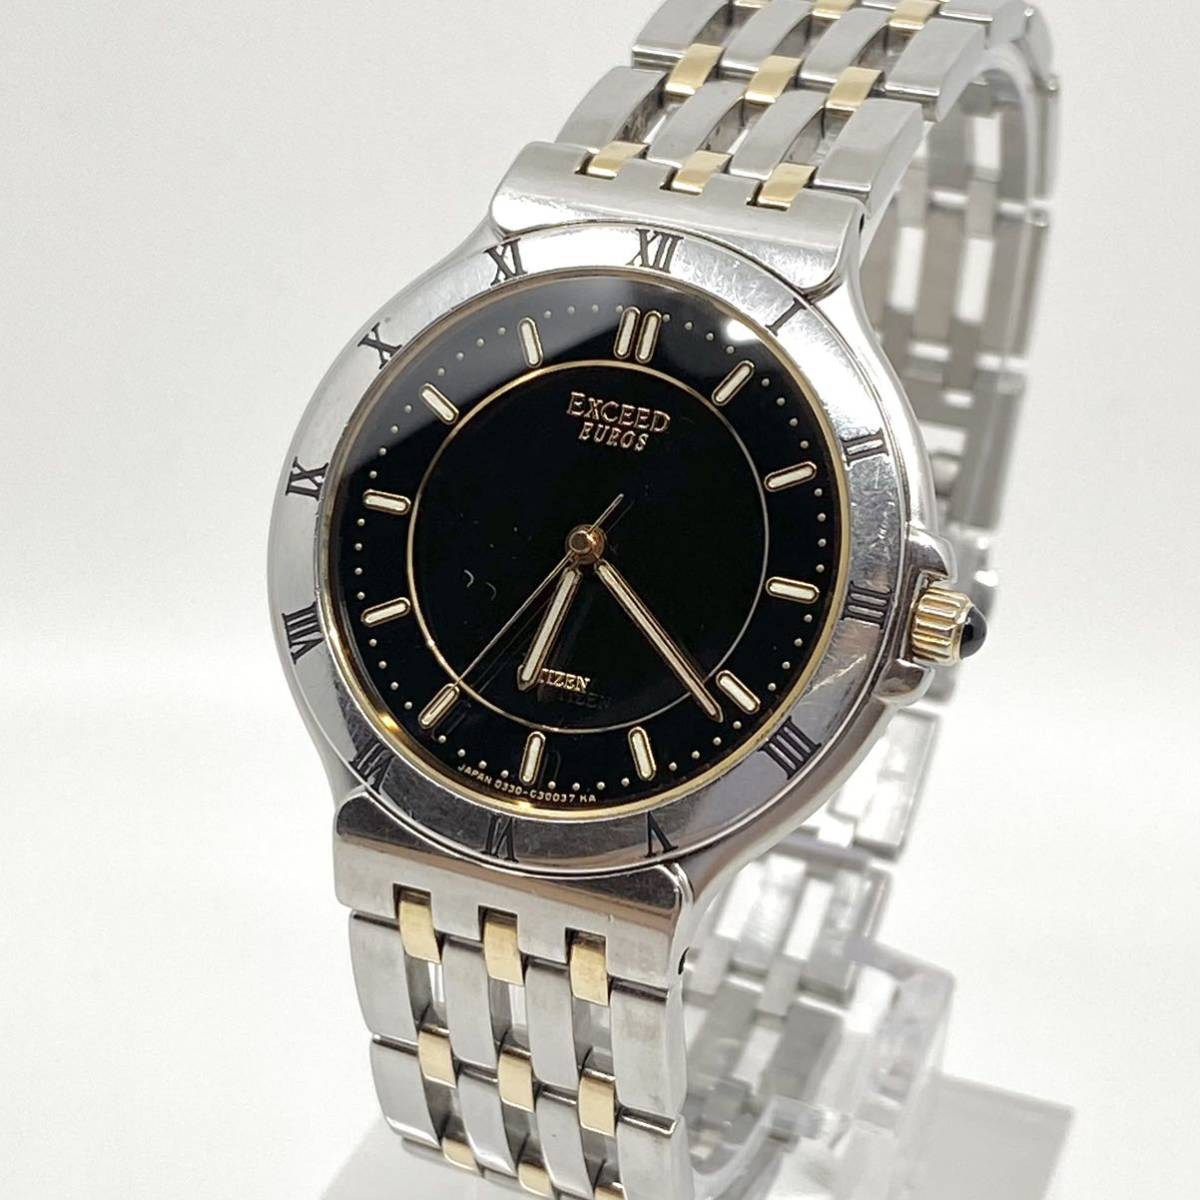 CITIZEN EXCEED EUROS 腕時計 メンズ 3針 ブラック 黒 コンビ シルバー ゴールド 金銀 シチズン エクシード ユーロス ローマン Y101_画像1